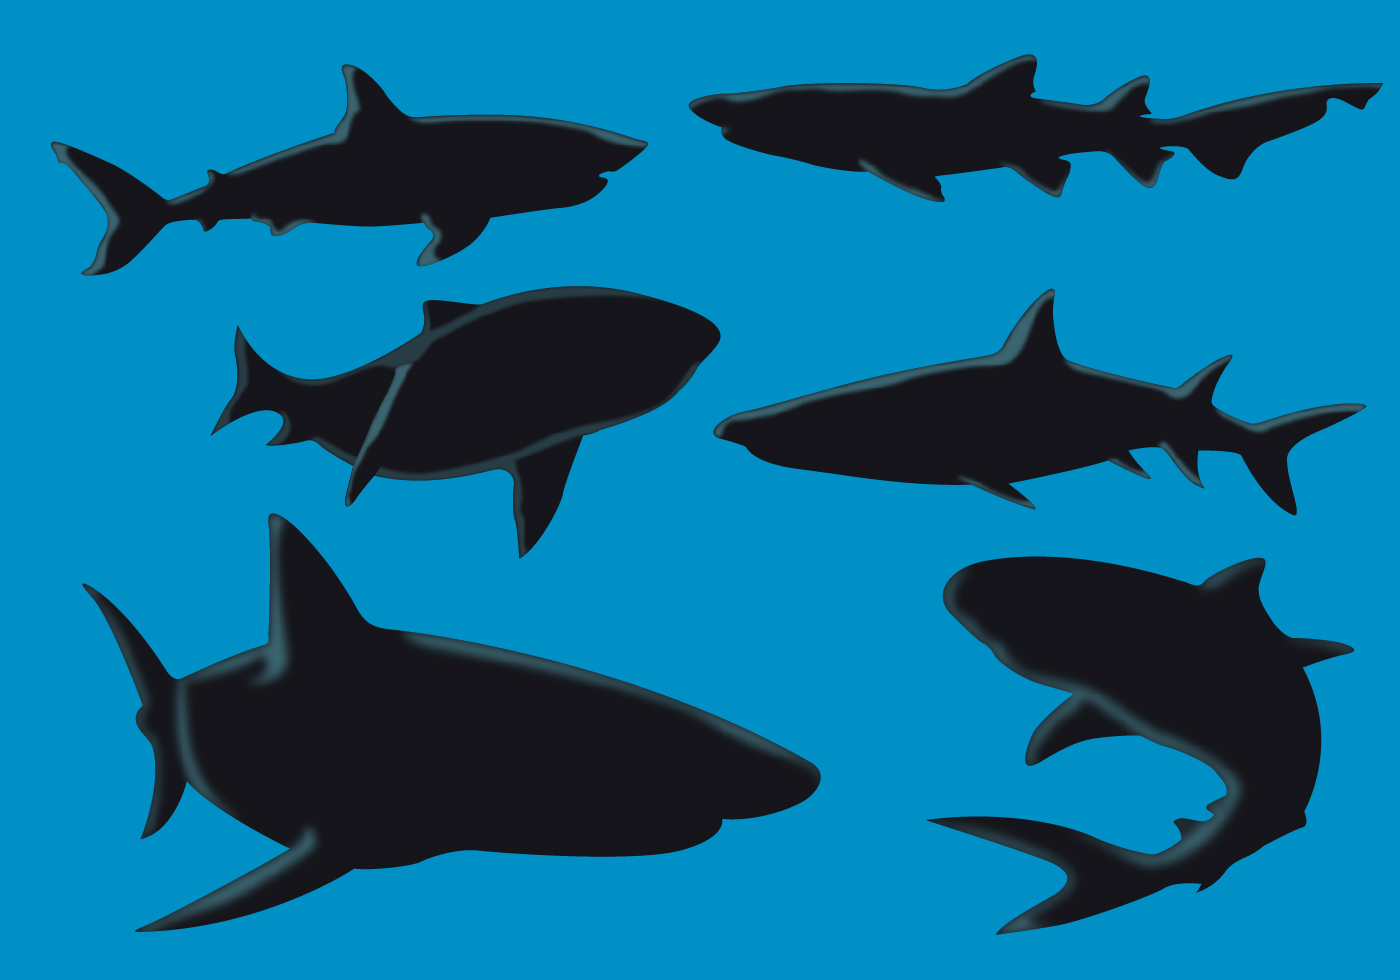 Download Shark Silhouette Vectors - Download Free Vector Art, Stock ...